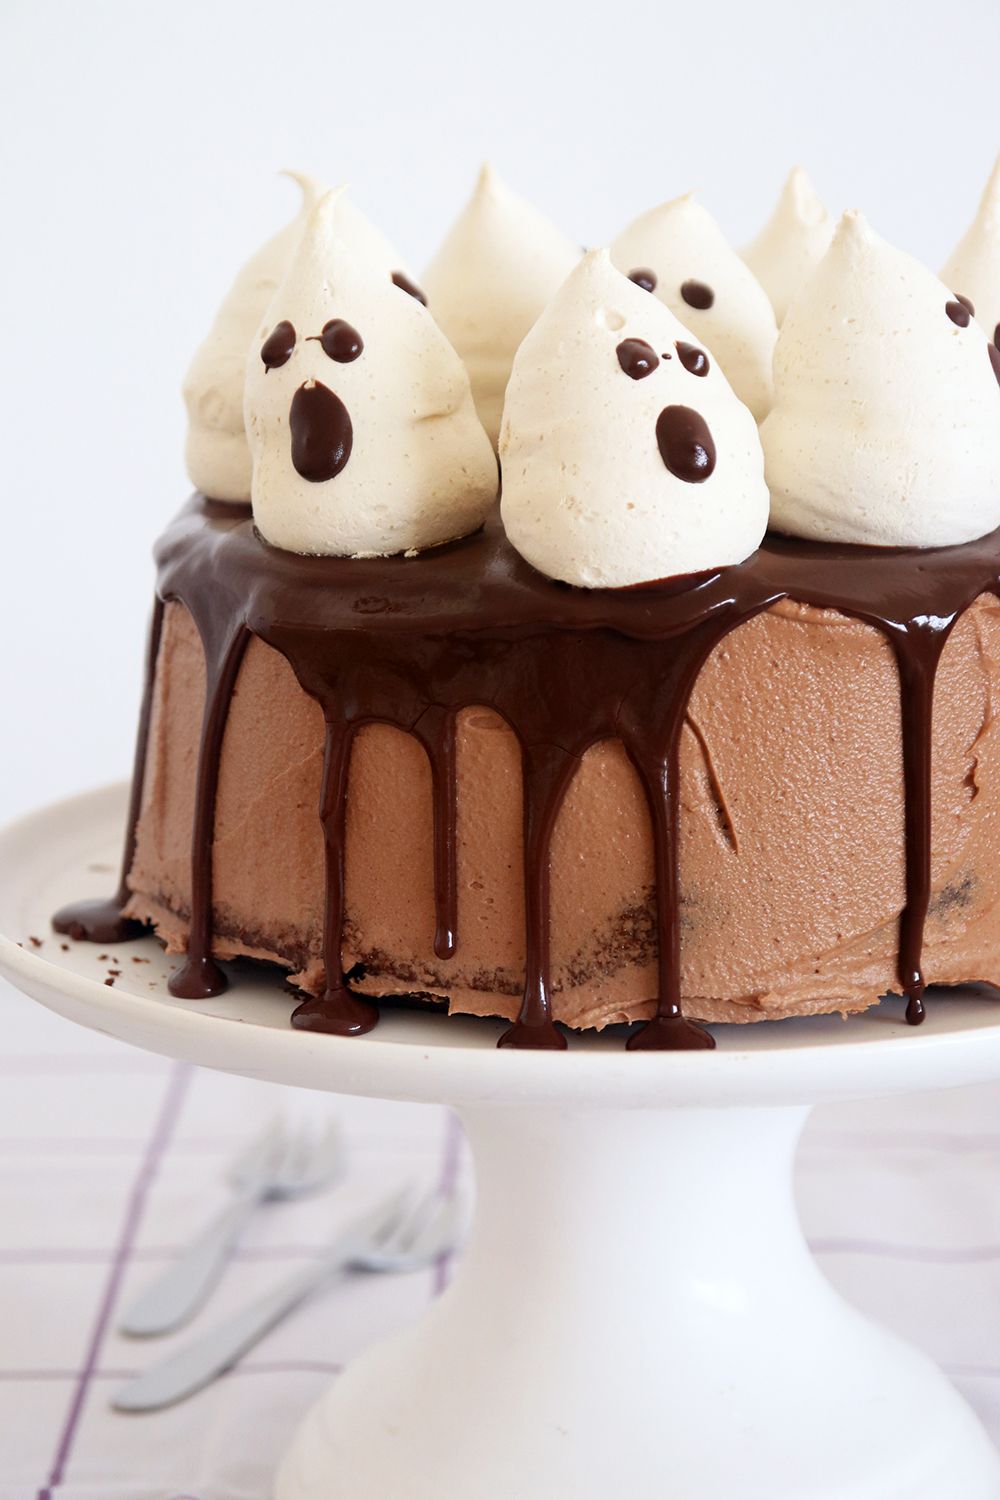 עוגת שוקולד גבוהה עם קישוט מרנג בצורת רוחות רפאים | צילום: נטלי לוין